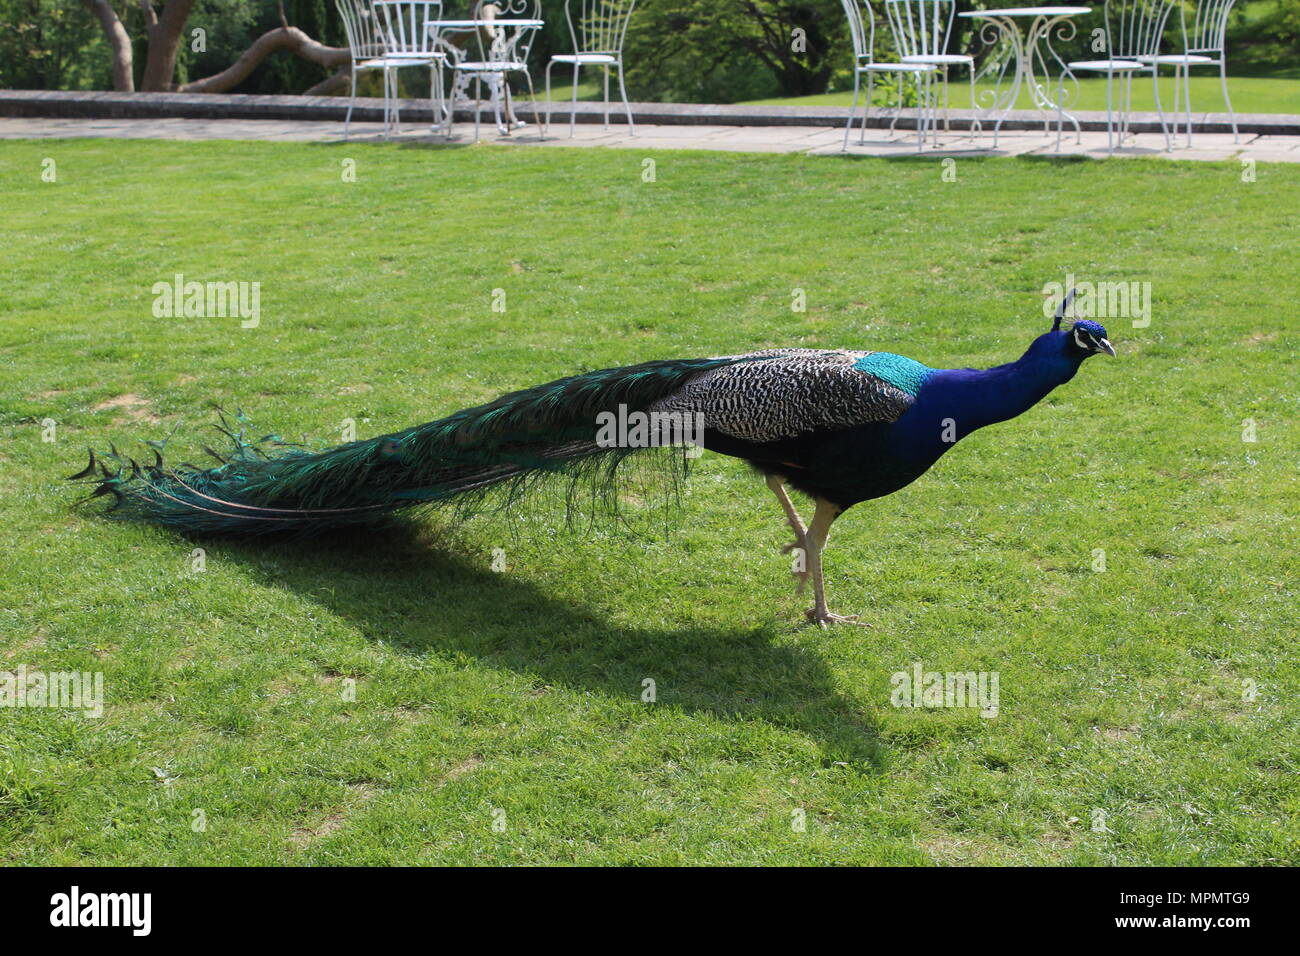 Peacock walking through garden Stock Photo